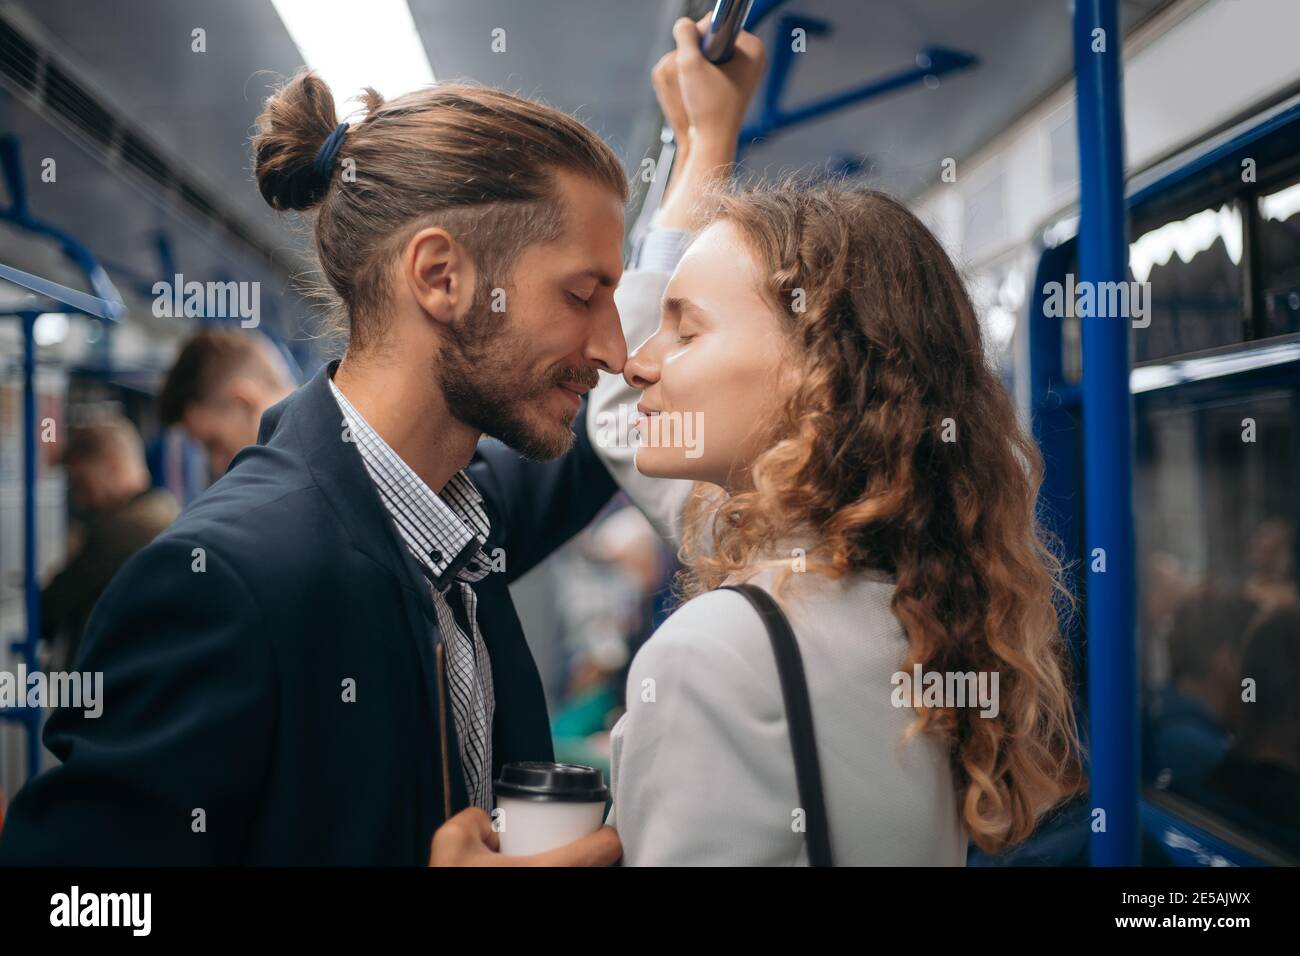 homme et femme amoureux regardant l'un l'autre sur un métro. Banque D'Images